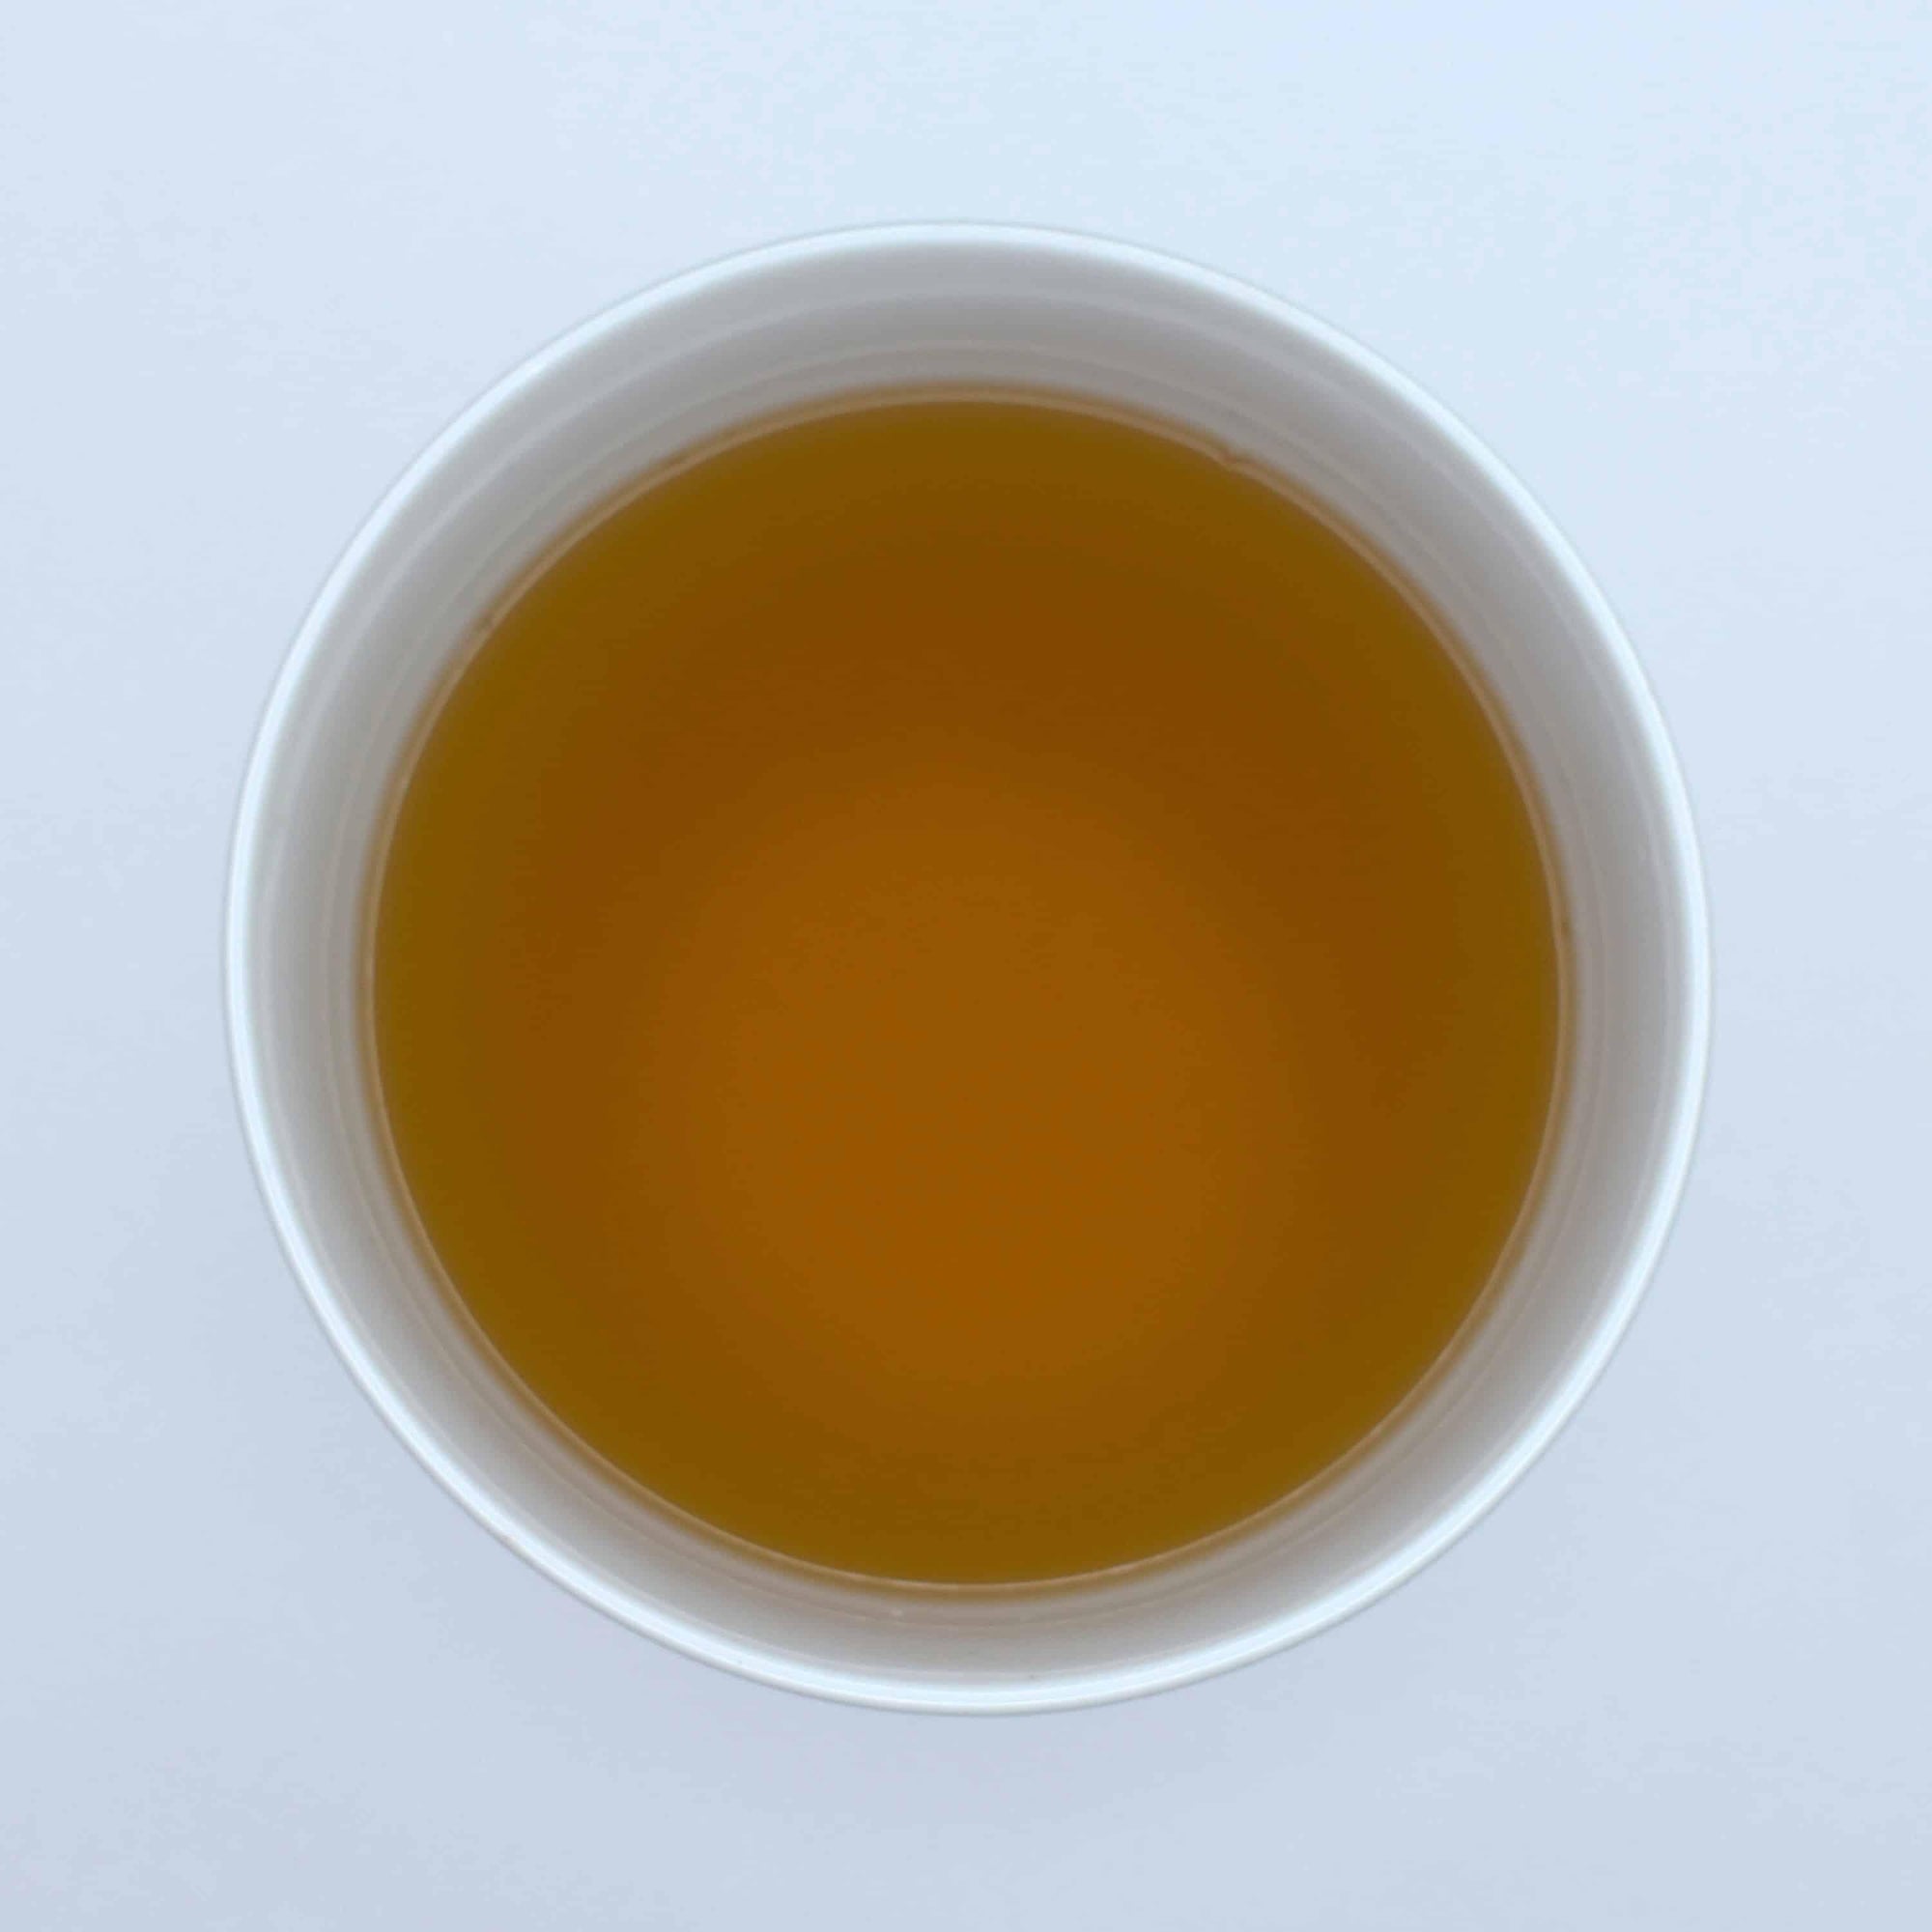 Peach White - Organic - The Tea & Spice Shoppe